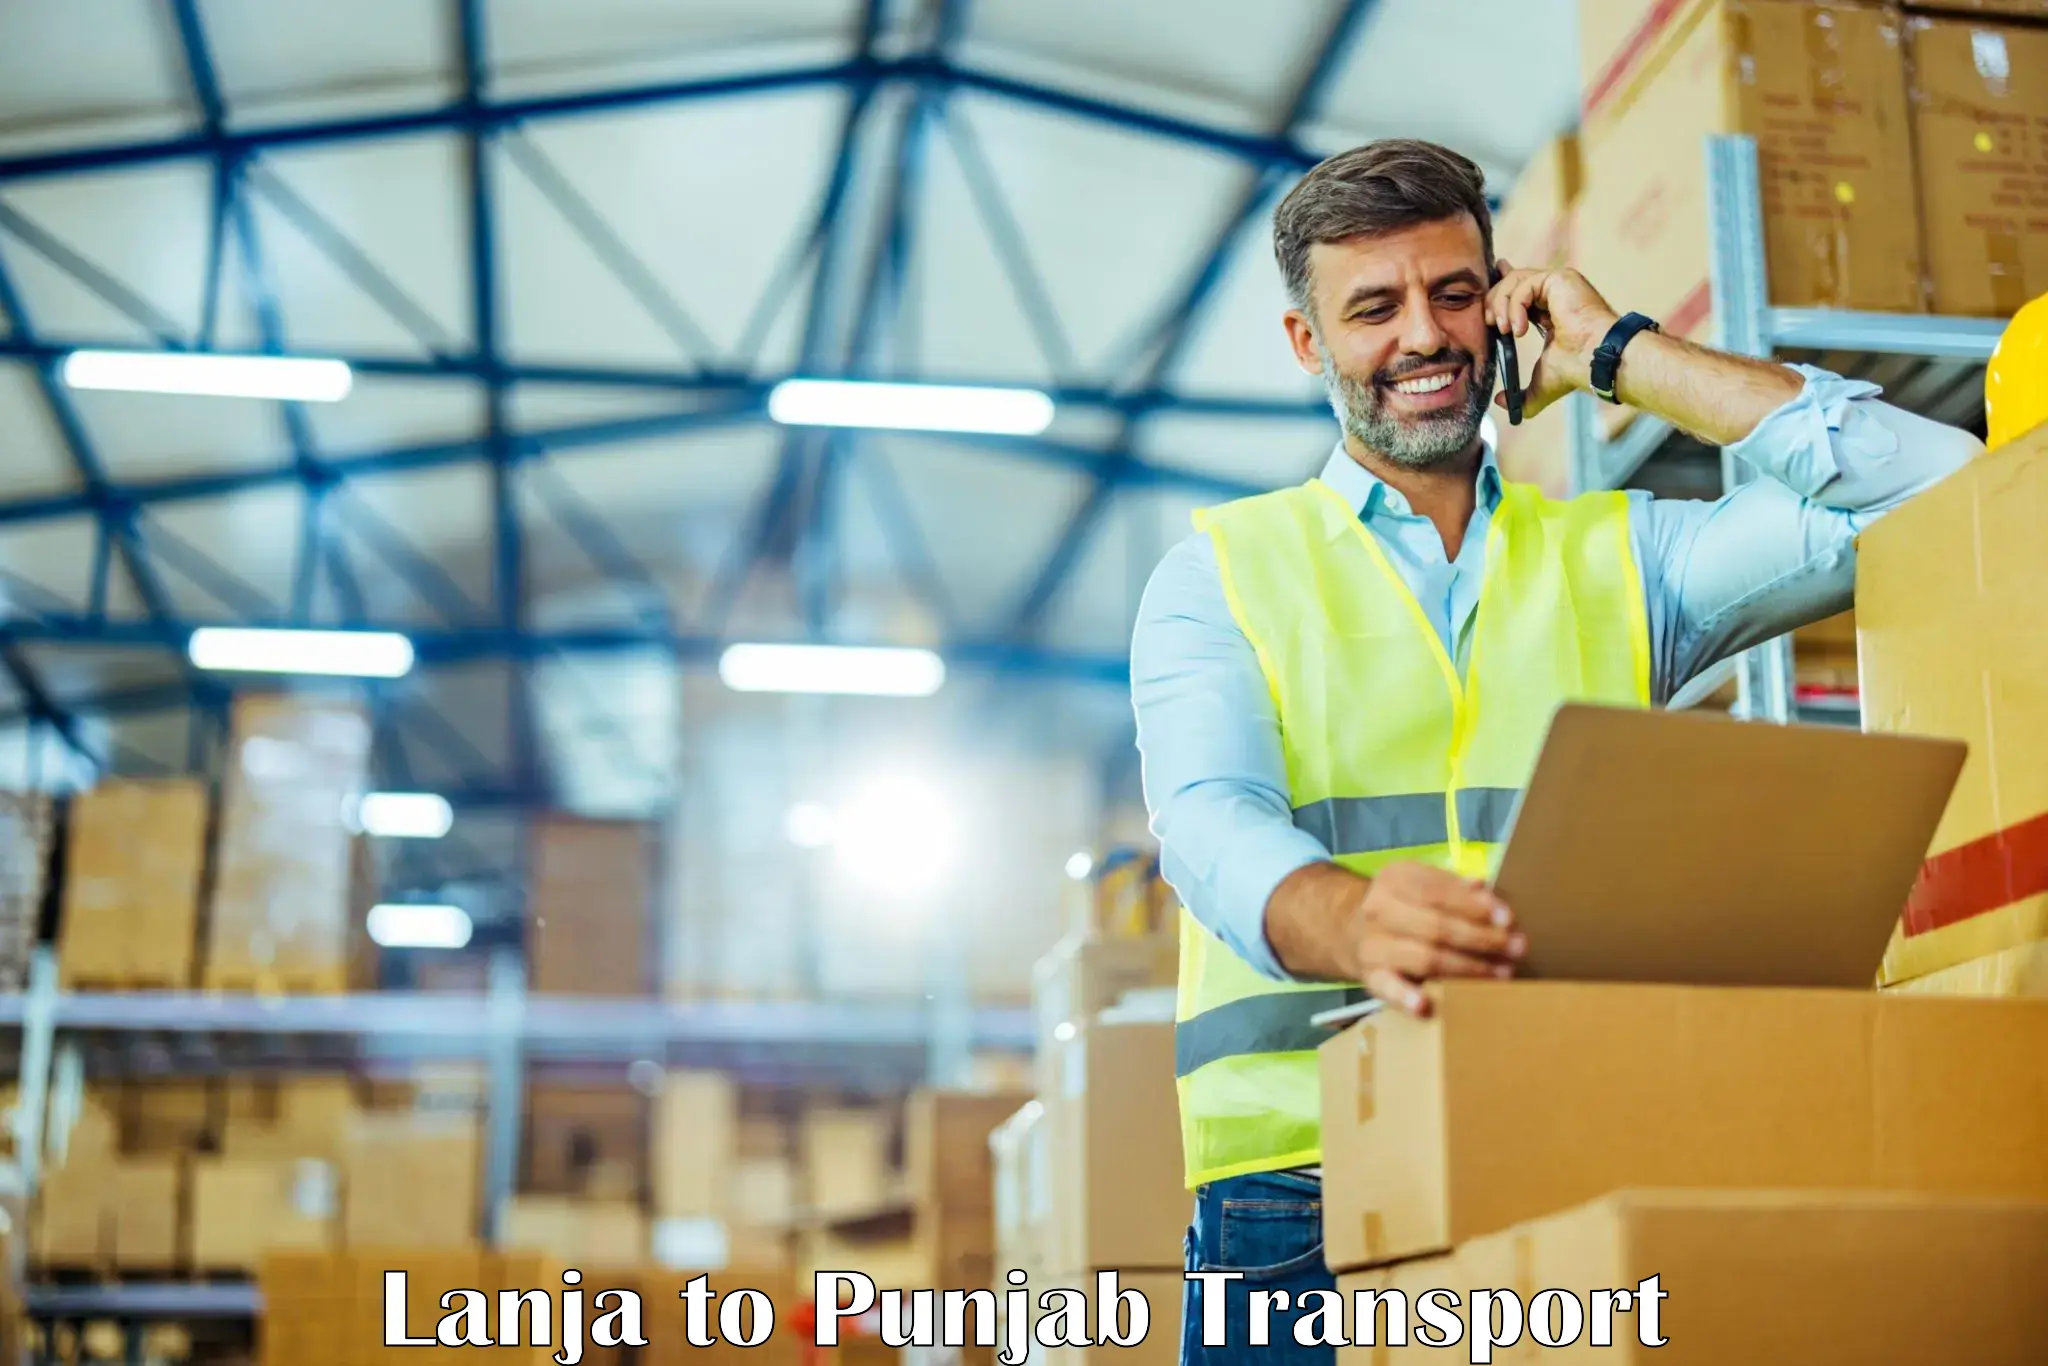 Bike transport service Lanja to Punjab